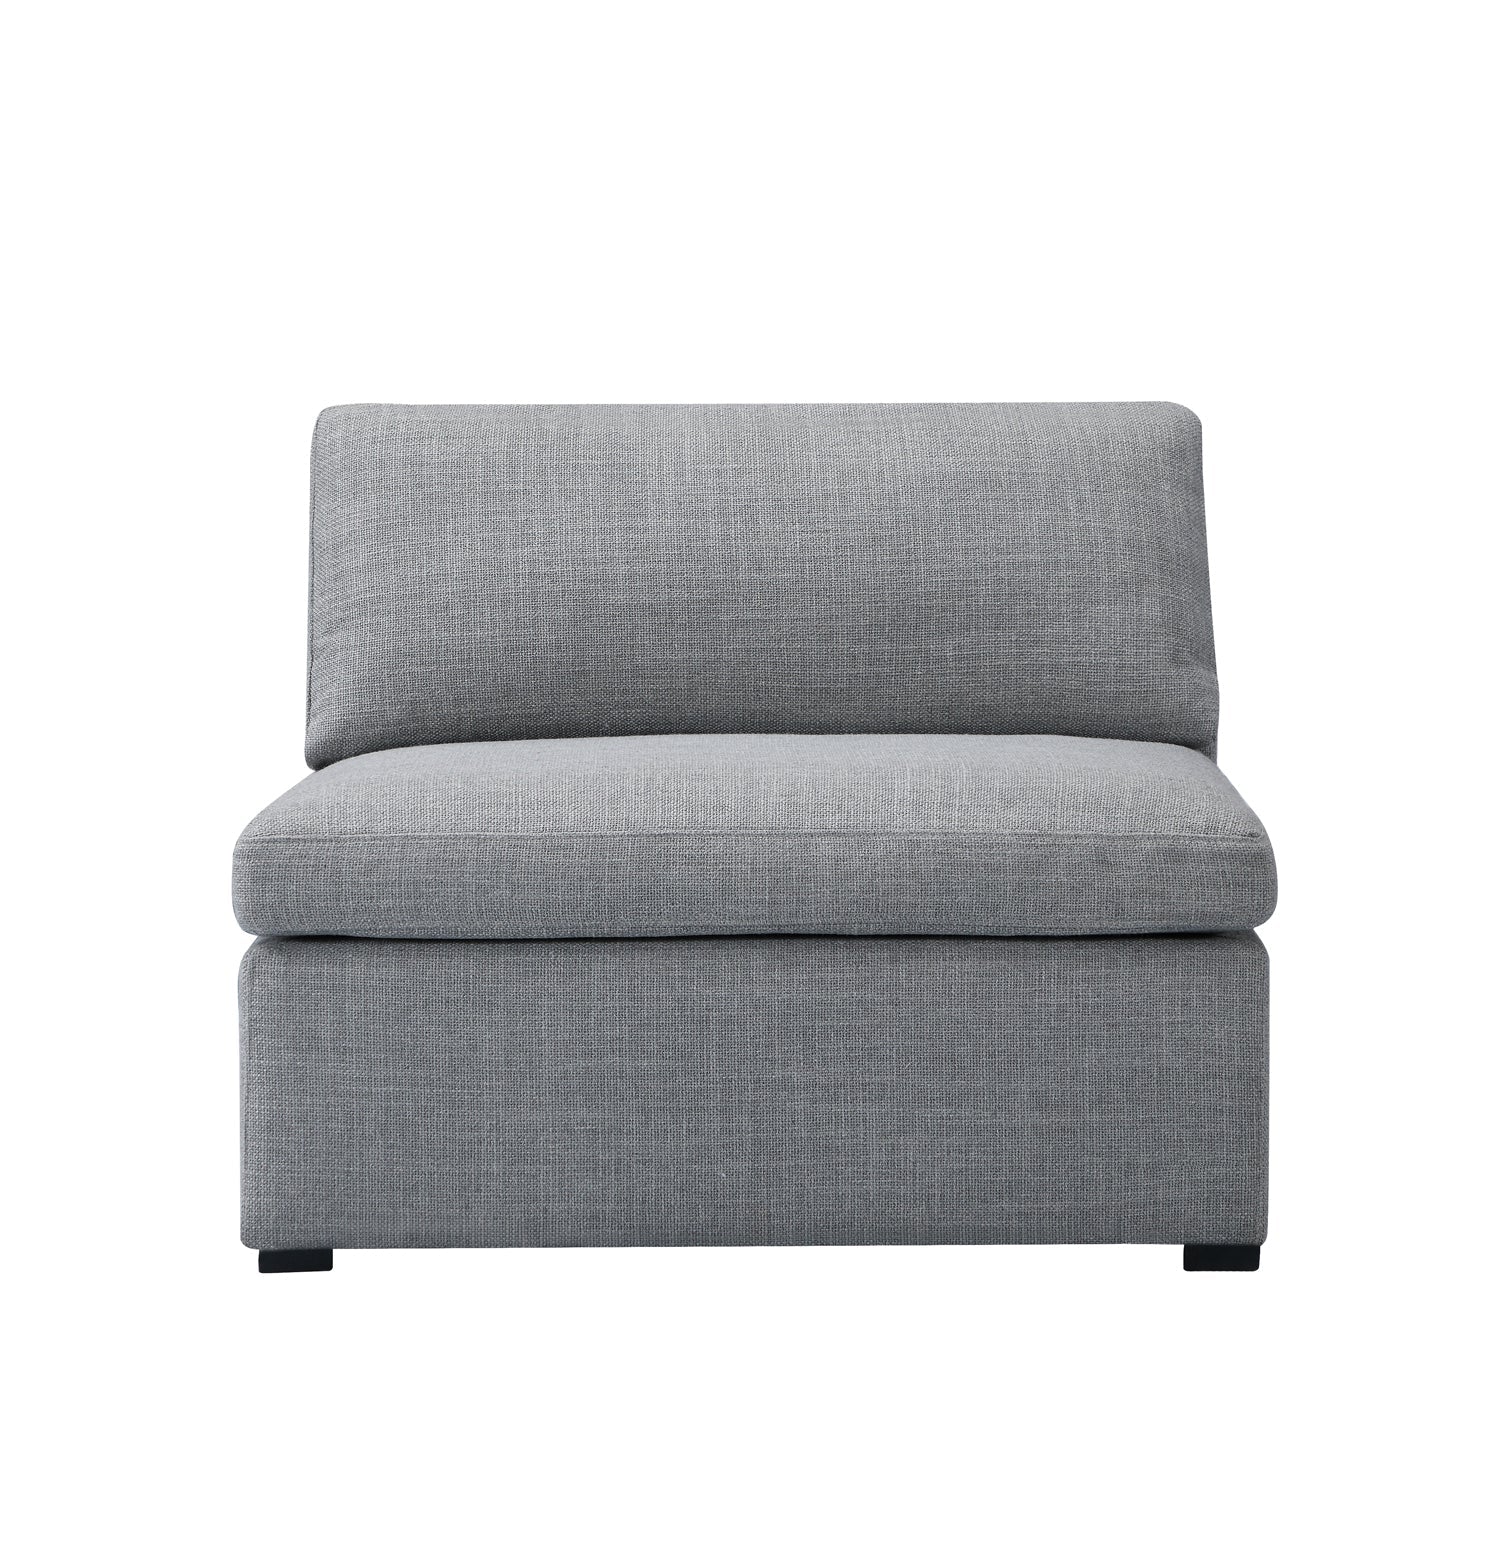 Inès Sofa - 1-Seater Single Module - Grey Fabric